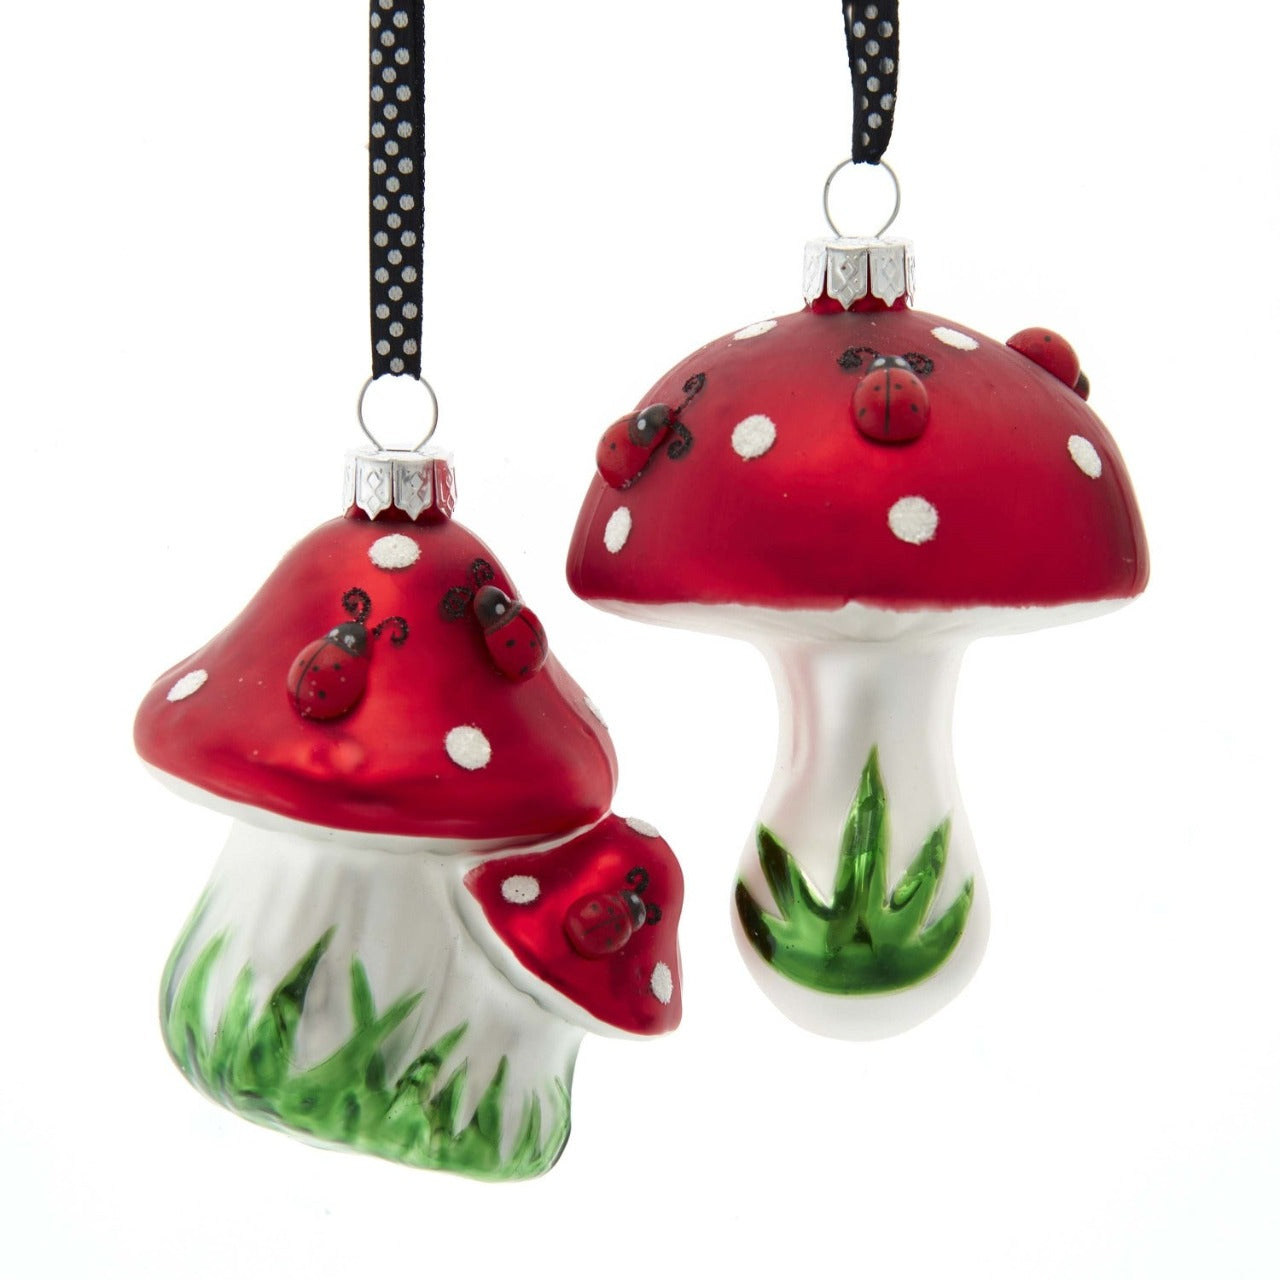 Kurt S Adler Ladybug On Mushroom Christmas Ornaments - Single